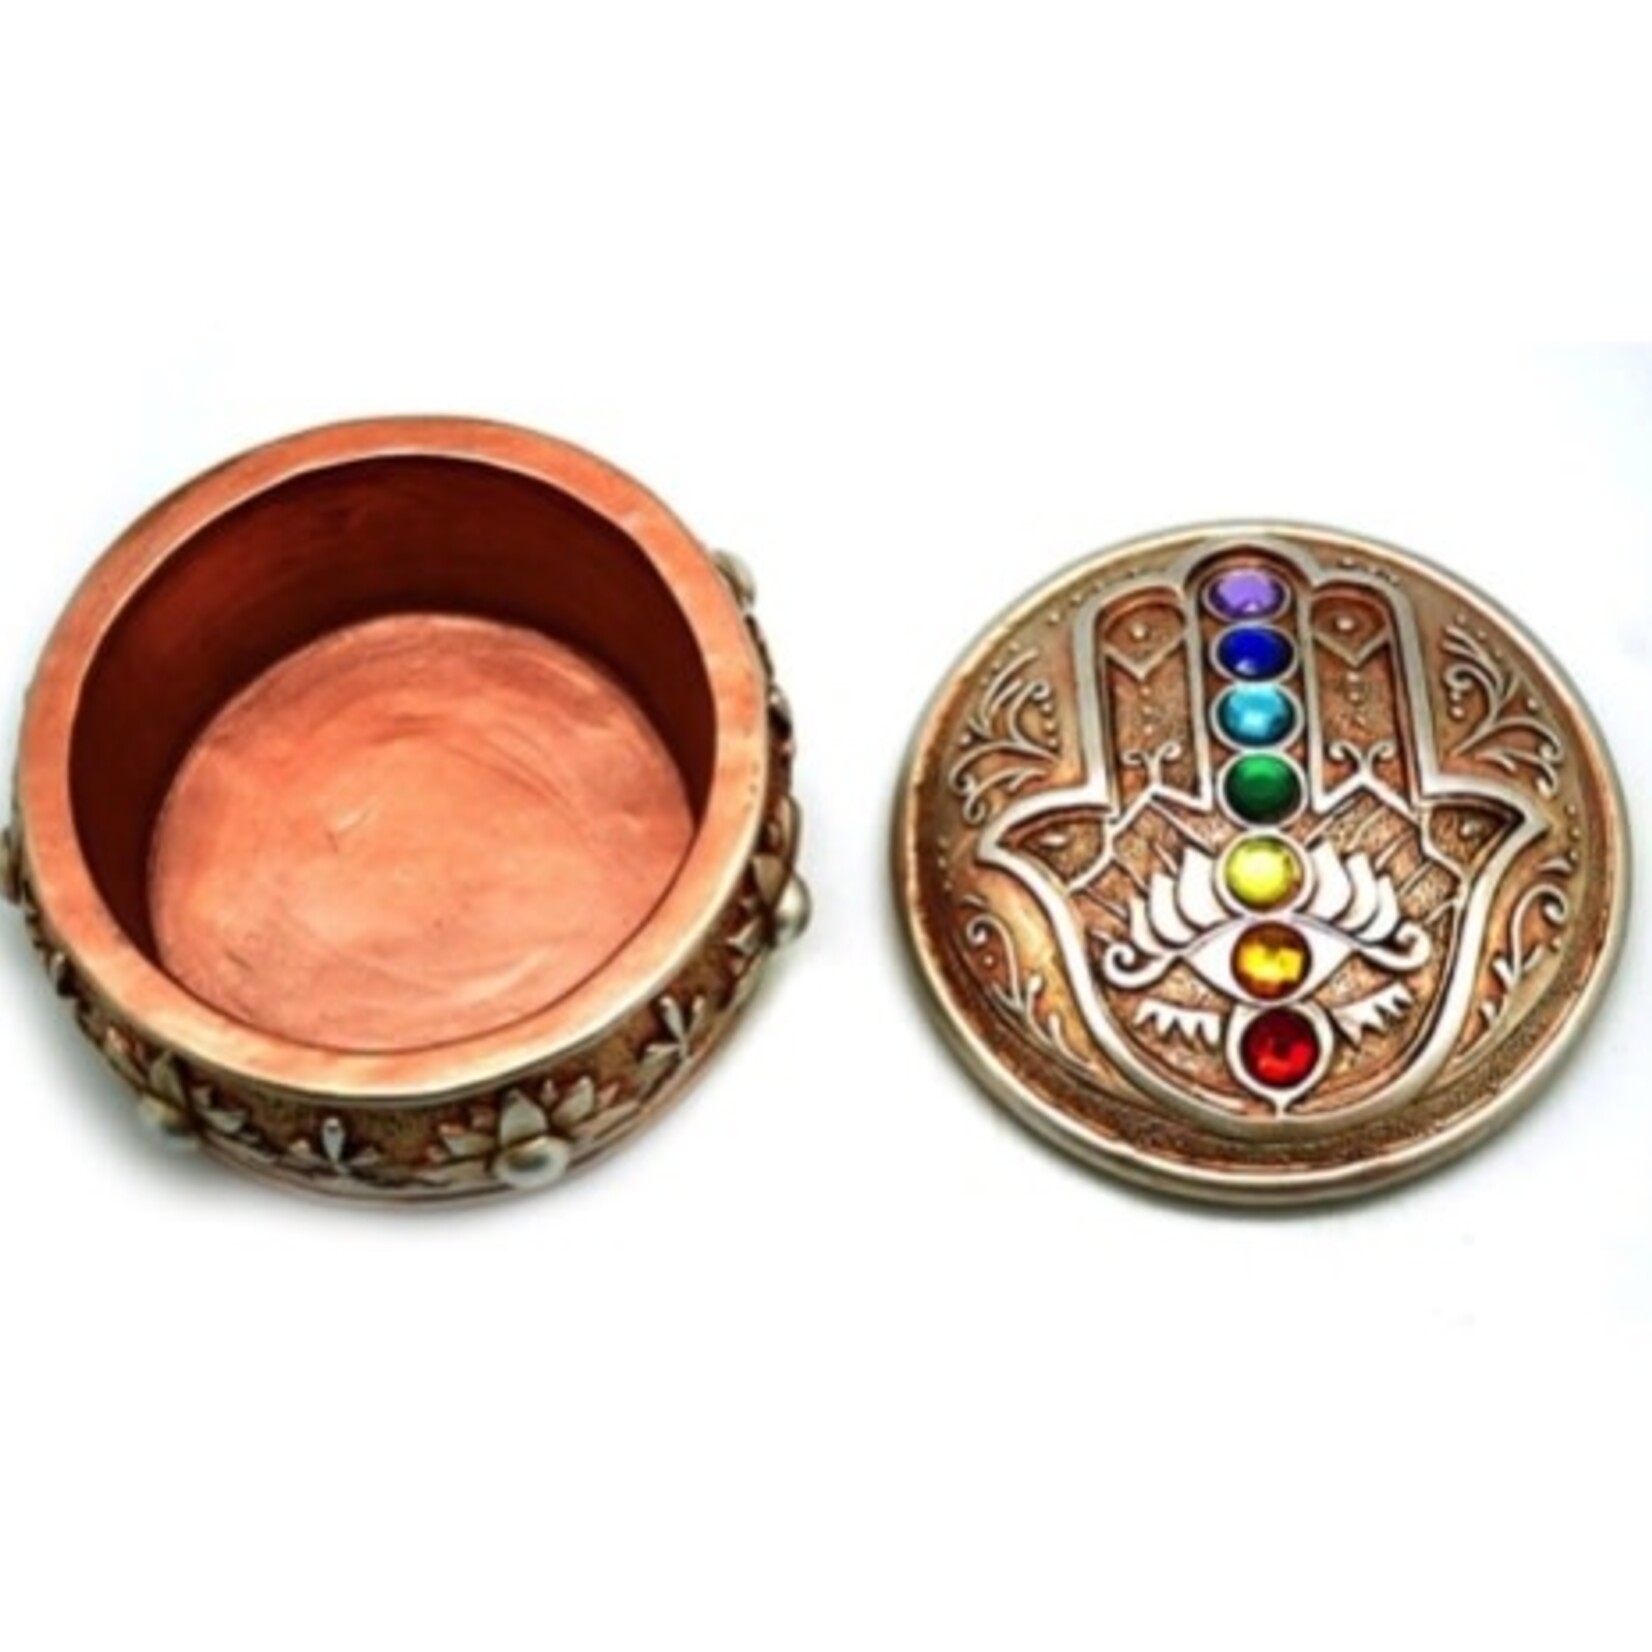 Faire Hamsa Resin Box With 7 Chakra Stones